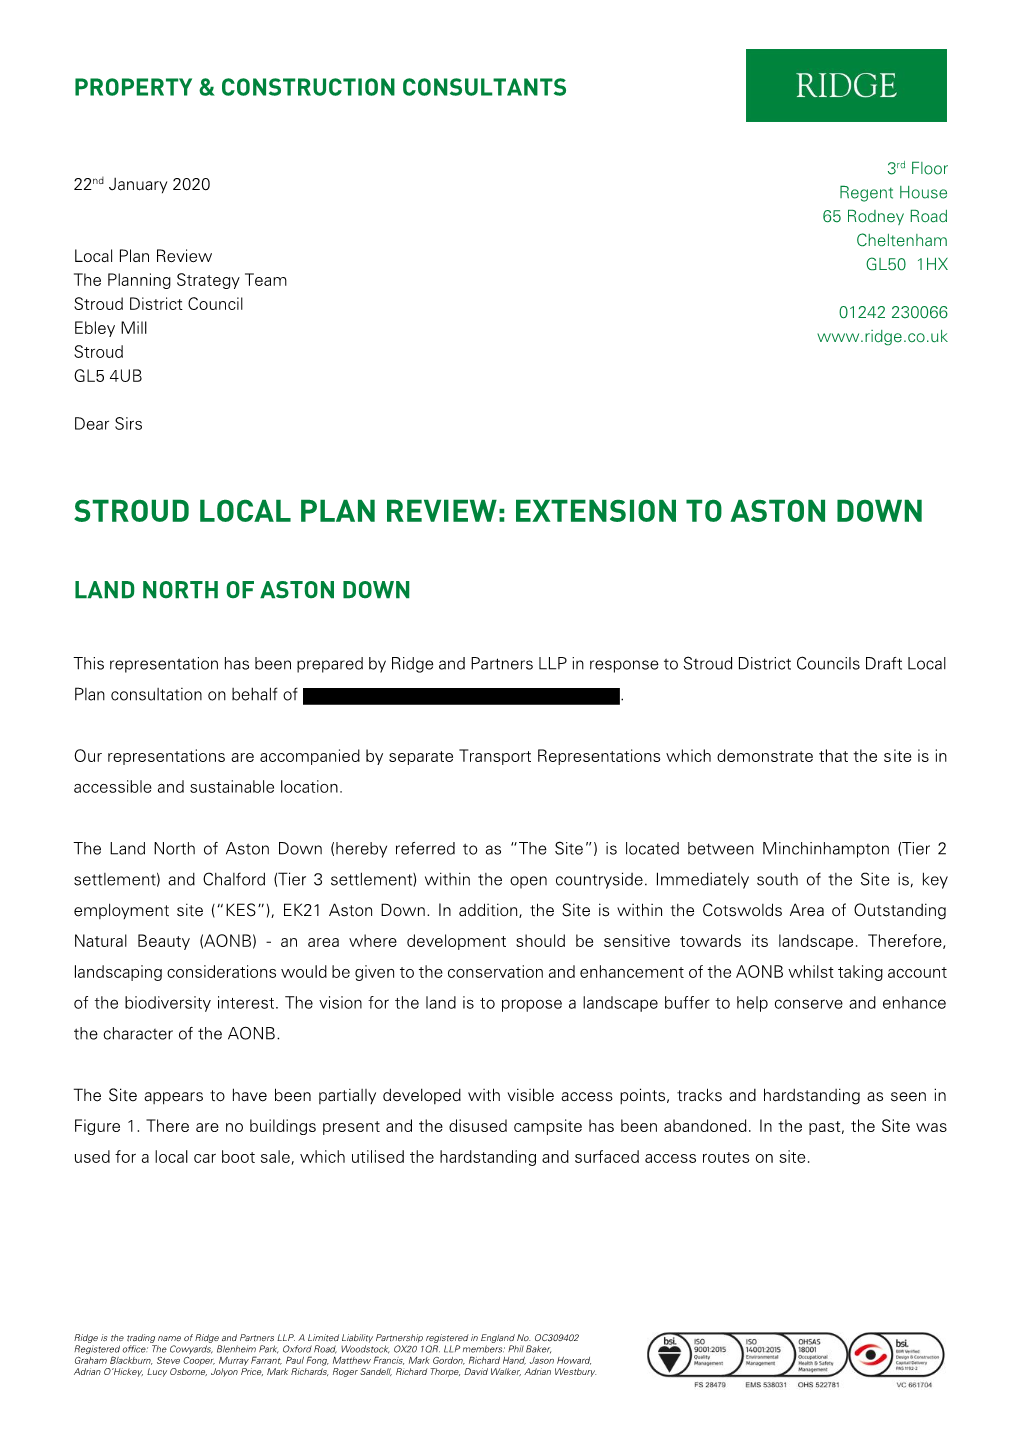 Extension to Aston Down